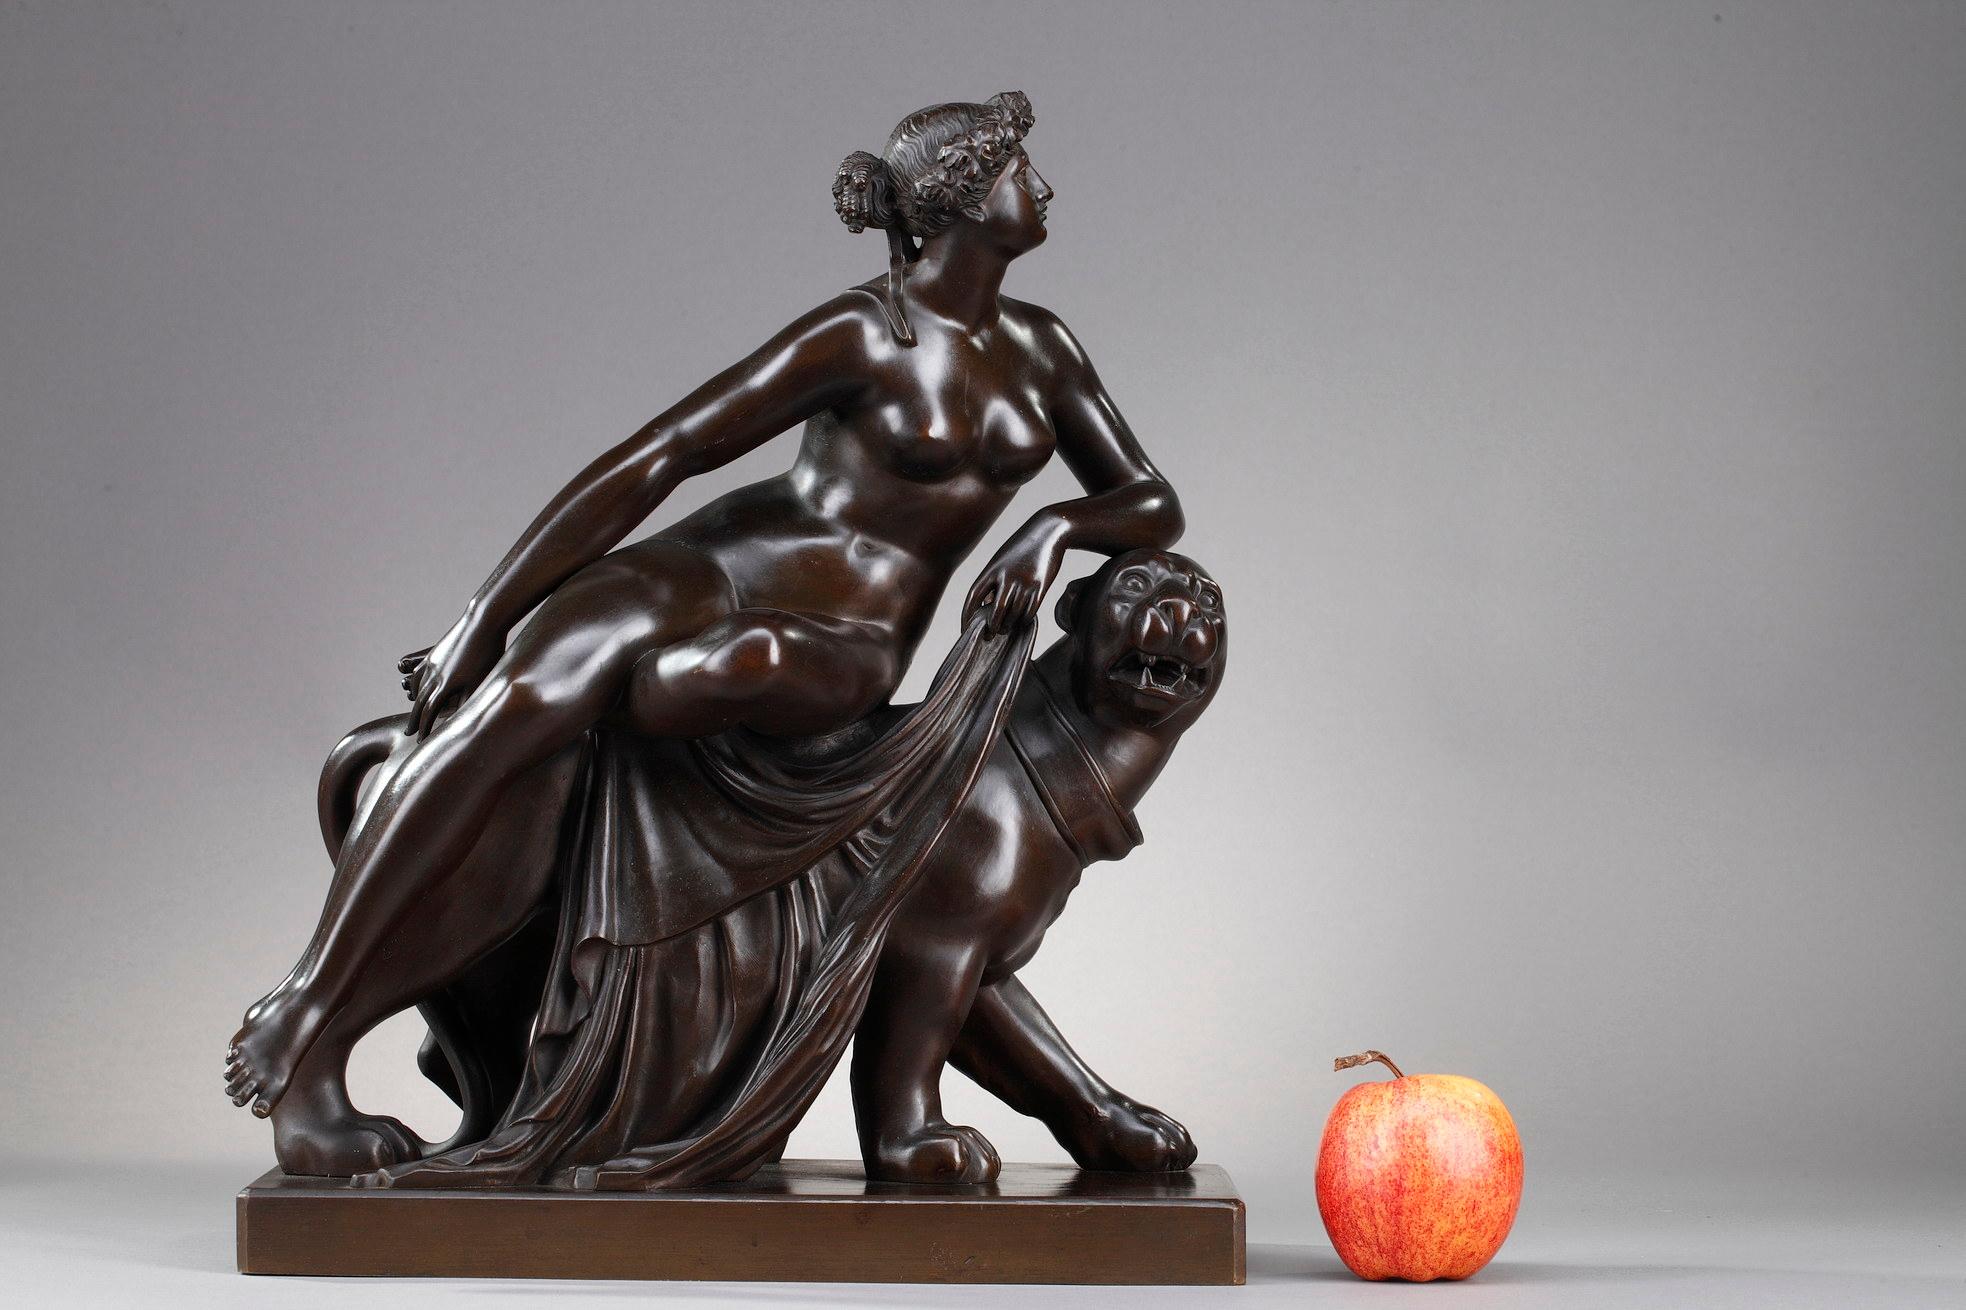 Groupe en bronze représentant Ariane chevauchant une panthère d'après une œuvre de Johann Heinrich Dannecker. Elle représente une jeune femme nue portant une couronne de feuilles de vigne car elle est l'épouse du dieu du vin Dionysos. Elle est